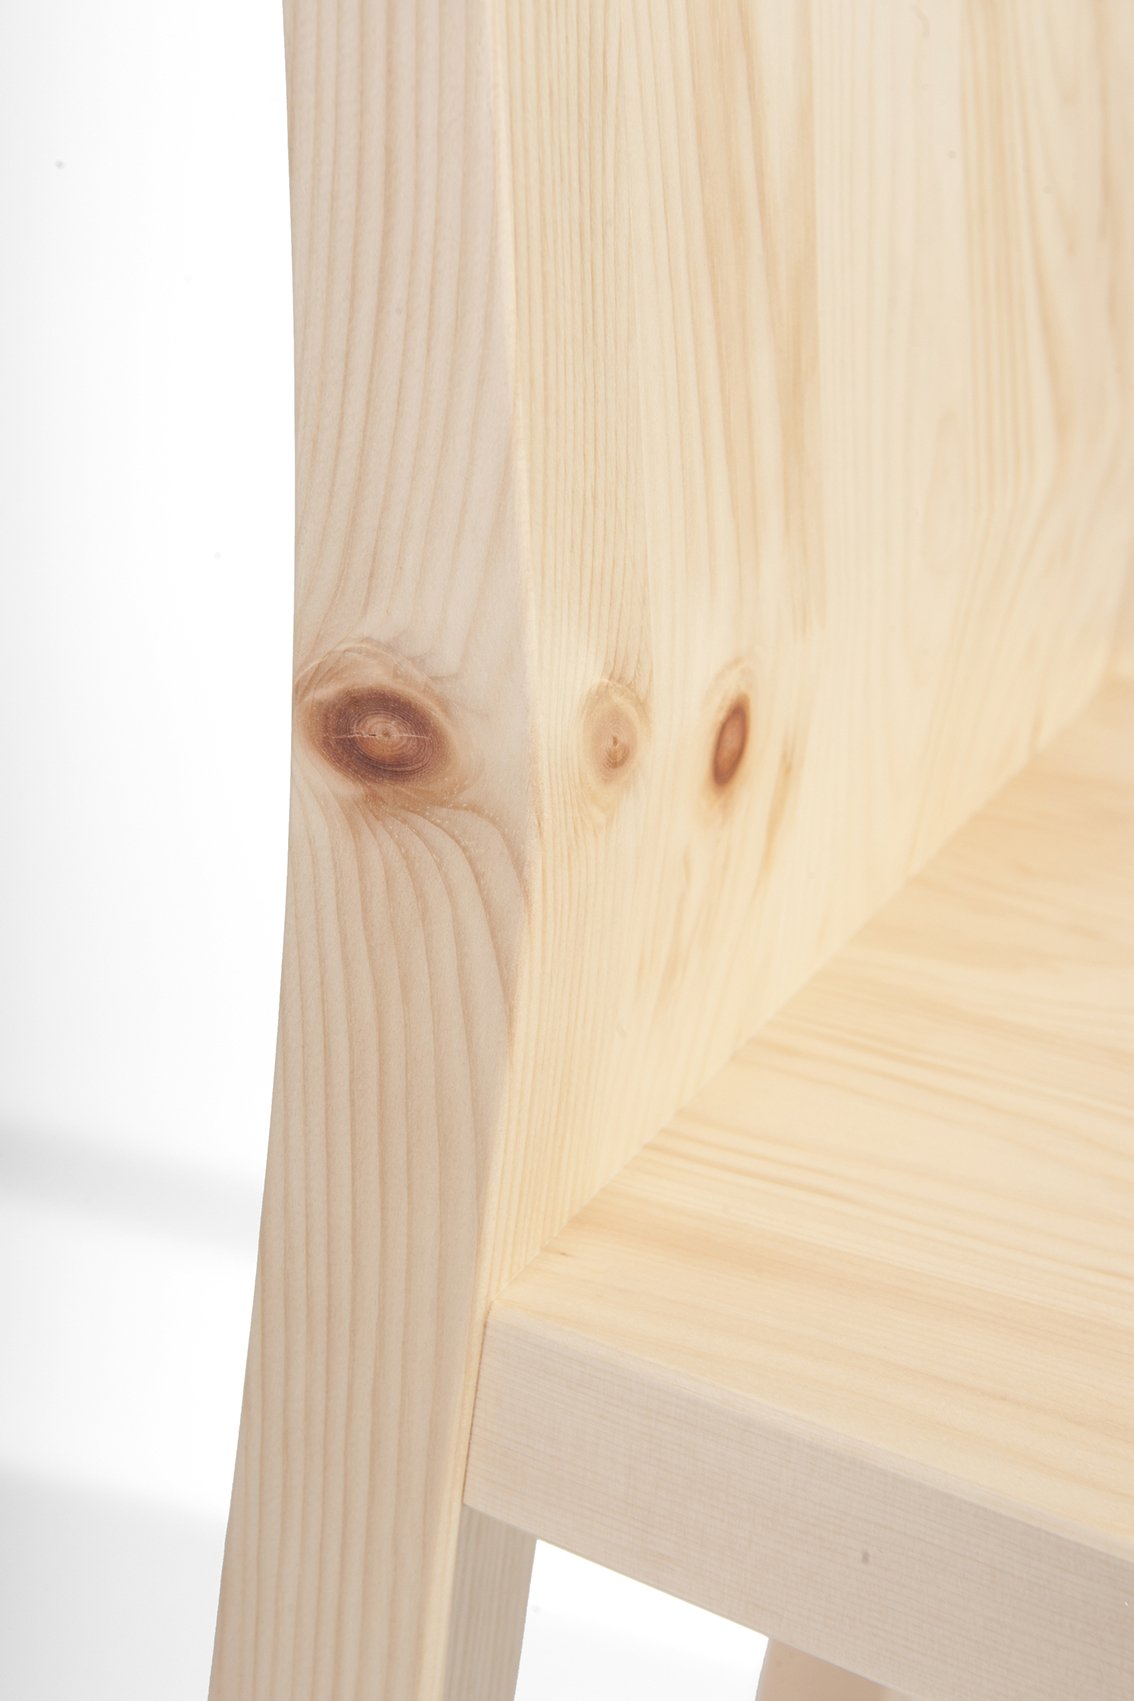 Designer Stuhl  aus Zirbenholz mit Armlehnen - 'Sitbetter' - Qualitätshandwerk aus Südtirol